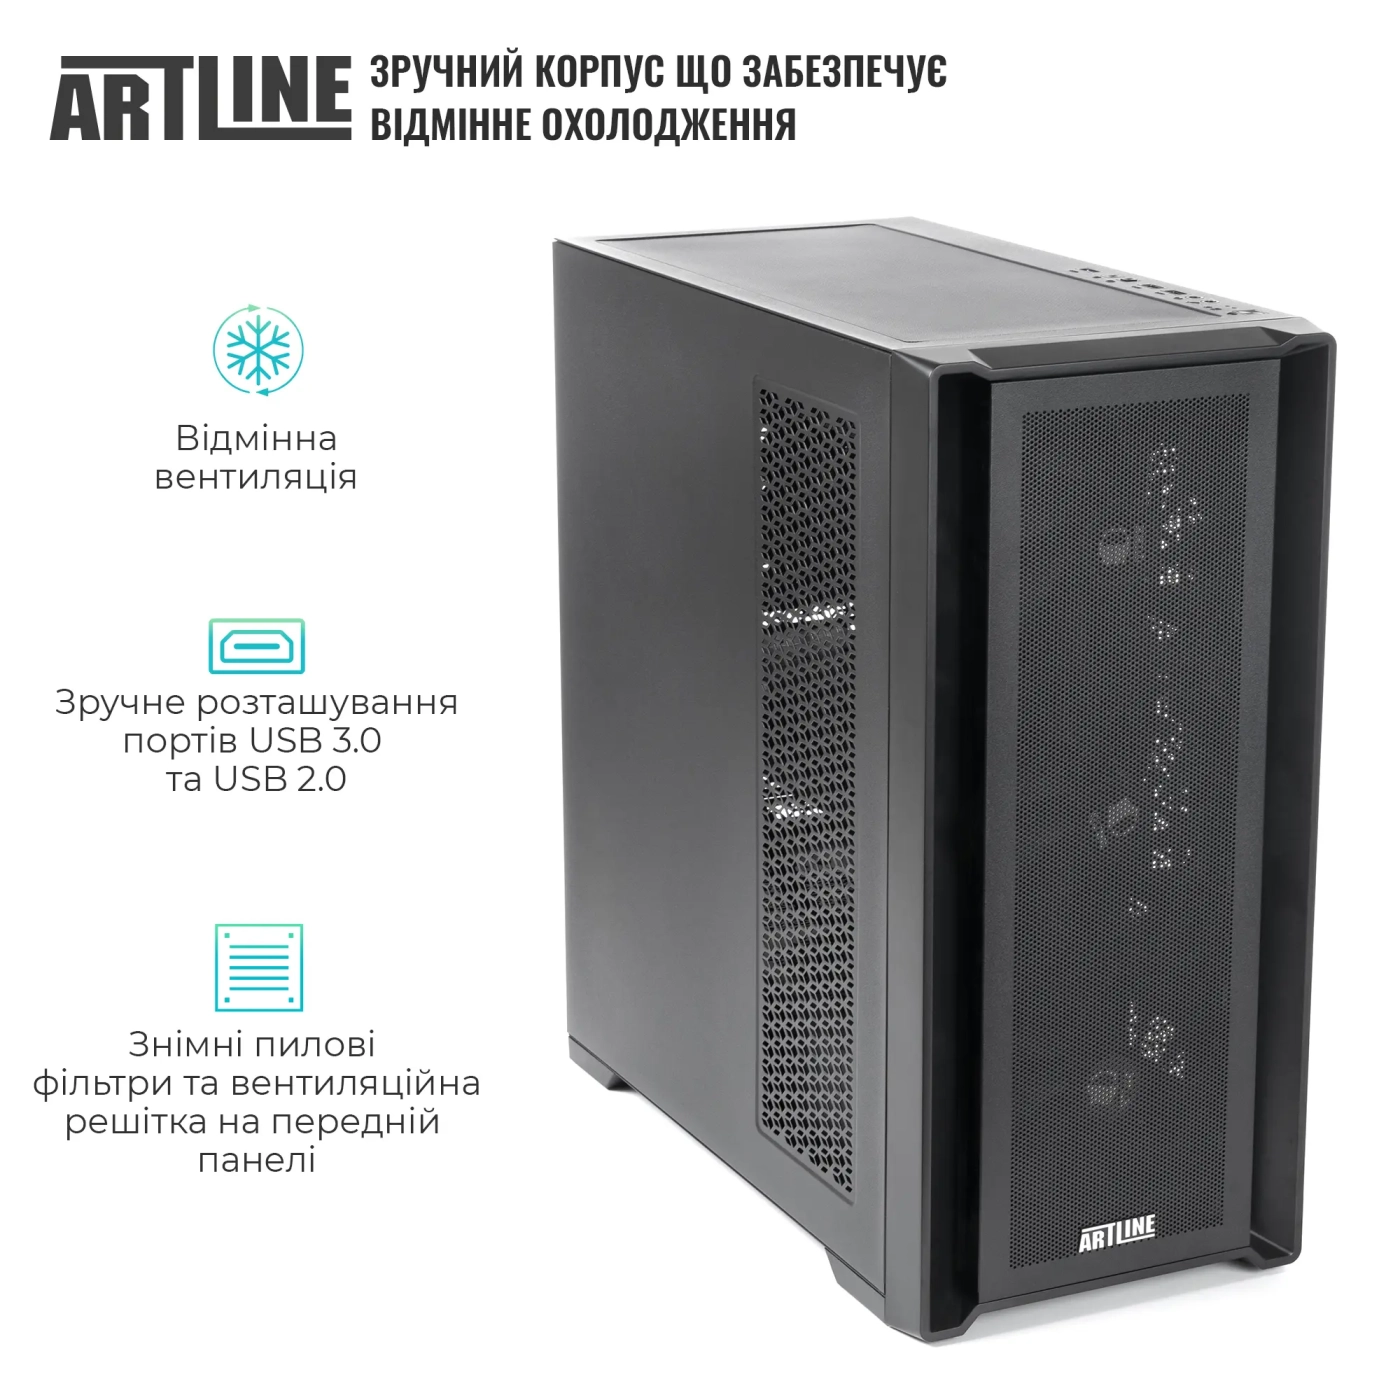 Купить Сервер ARTLINE Business T81 (T81v22) - фото 2